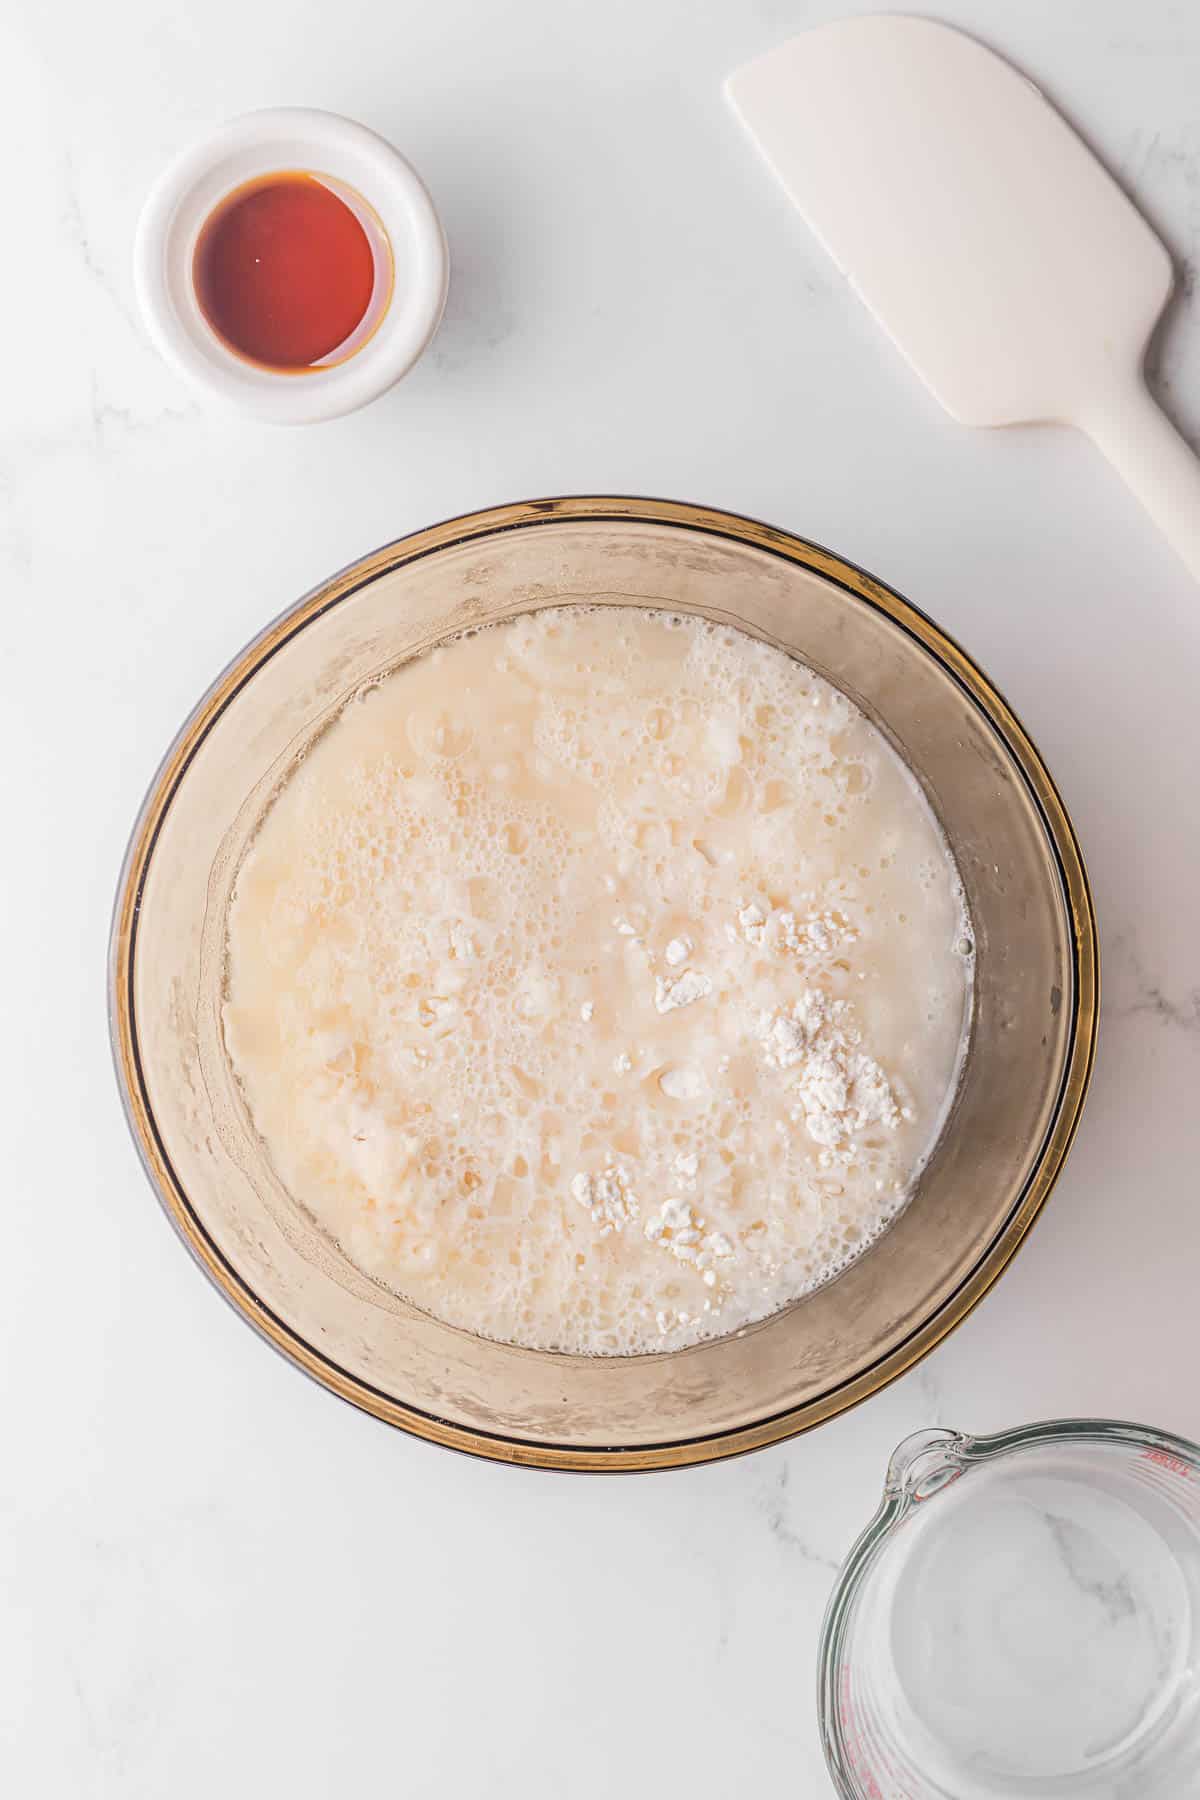 mixing flour and water to make Mandarin pancakes.